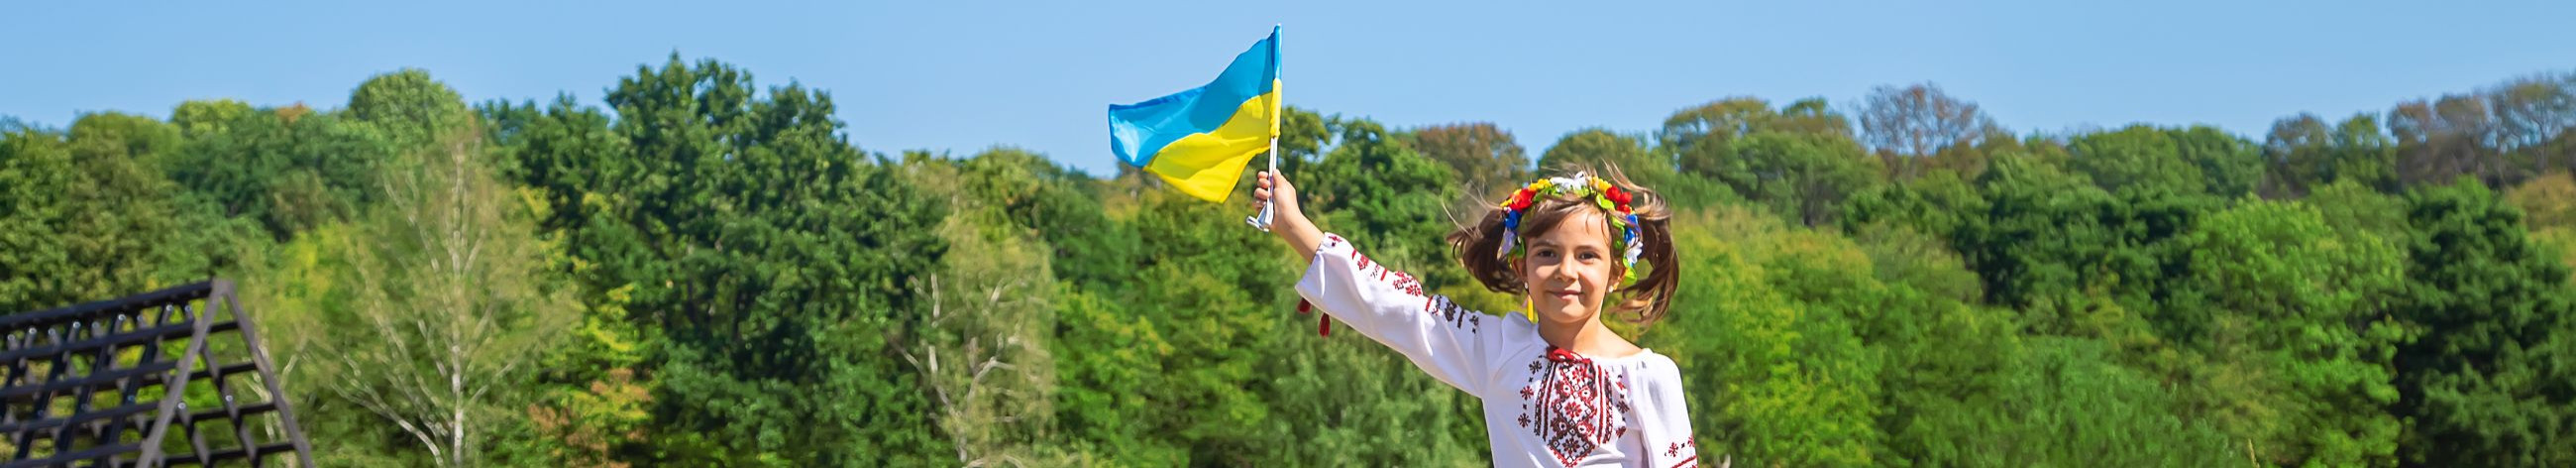 Viimsi Vabatahtlikud MTÜ pakub abi ja tuge Ukraina sõjapõgenikele Viimsis, korraldades üritusi, annetusprogramme ning pakkudes nõustamist ja praktilist tuge nende igapäevaelu korraldamisel.